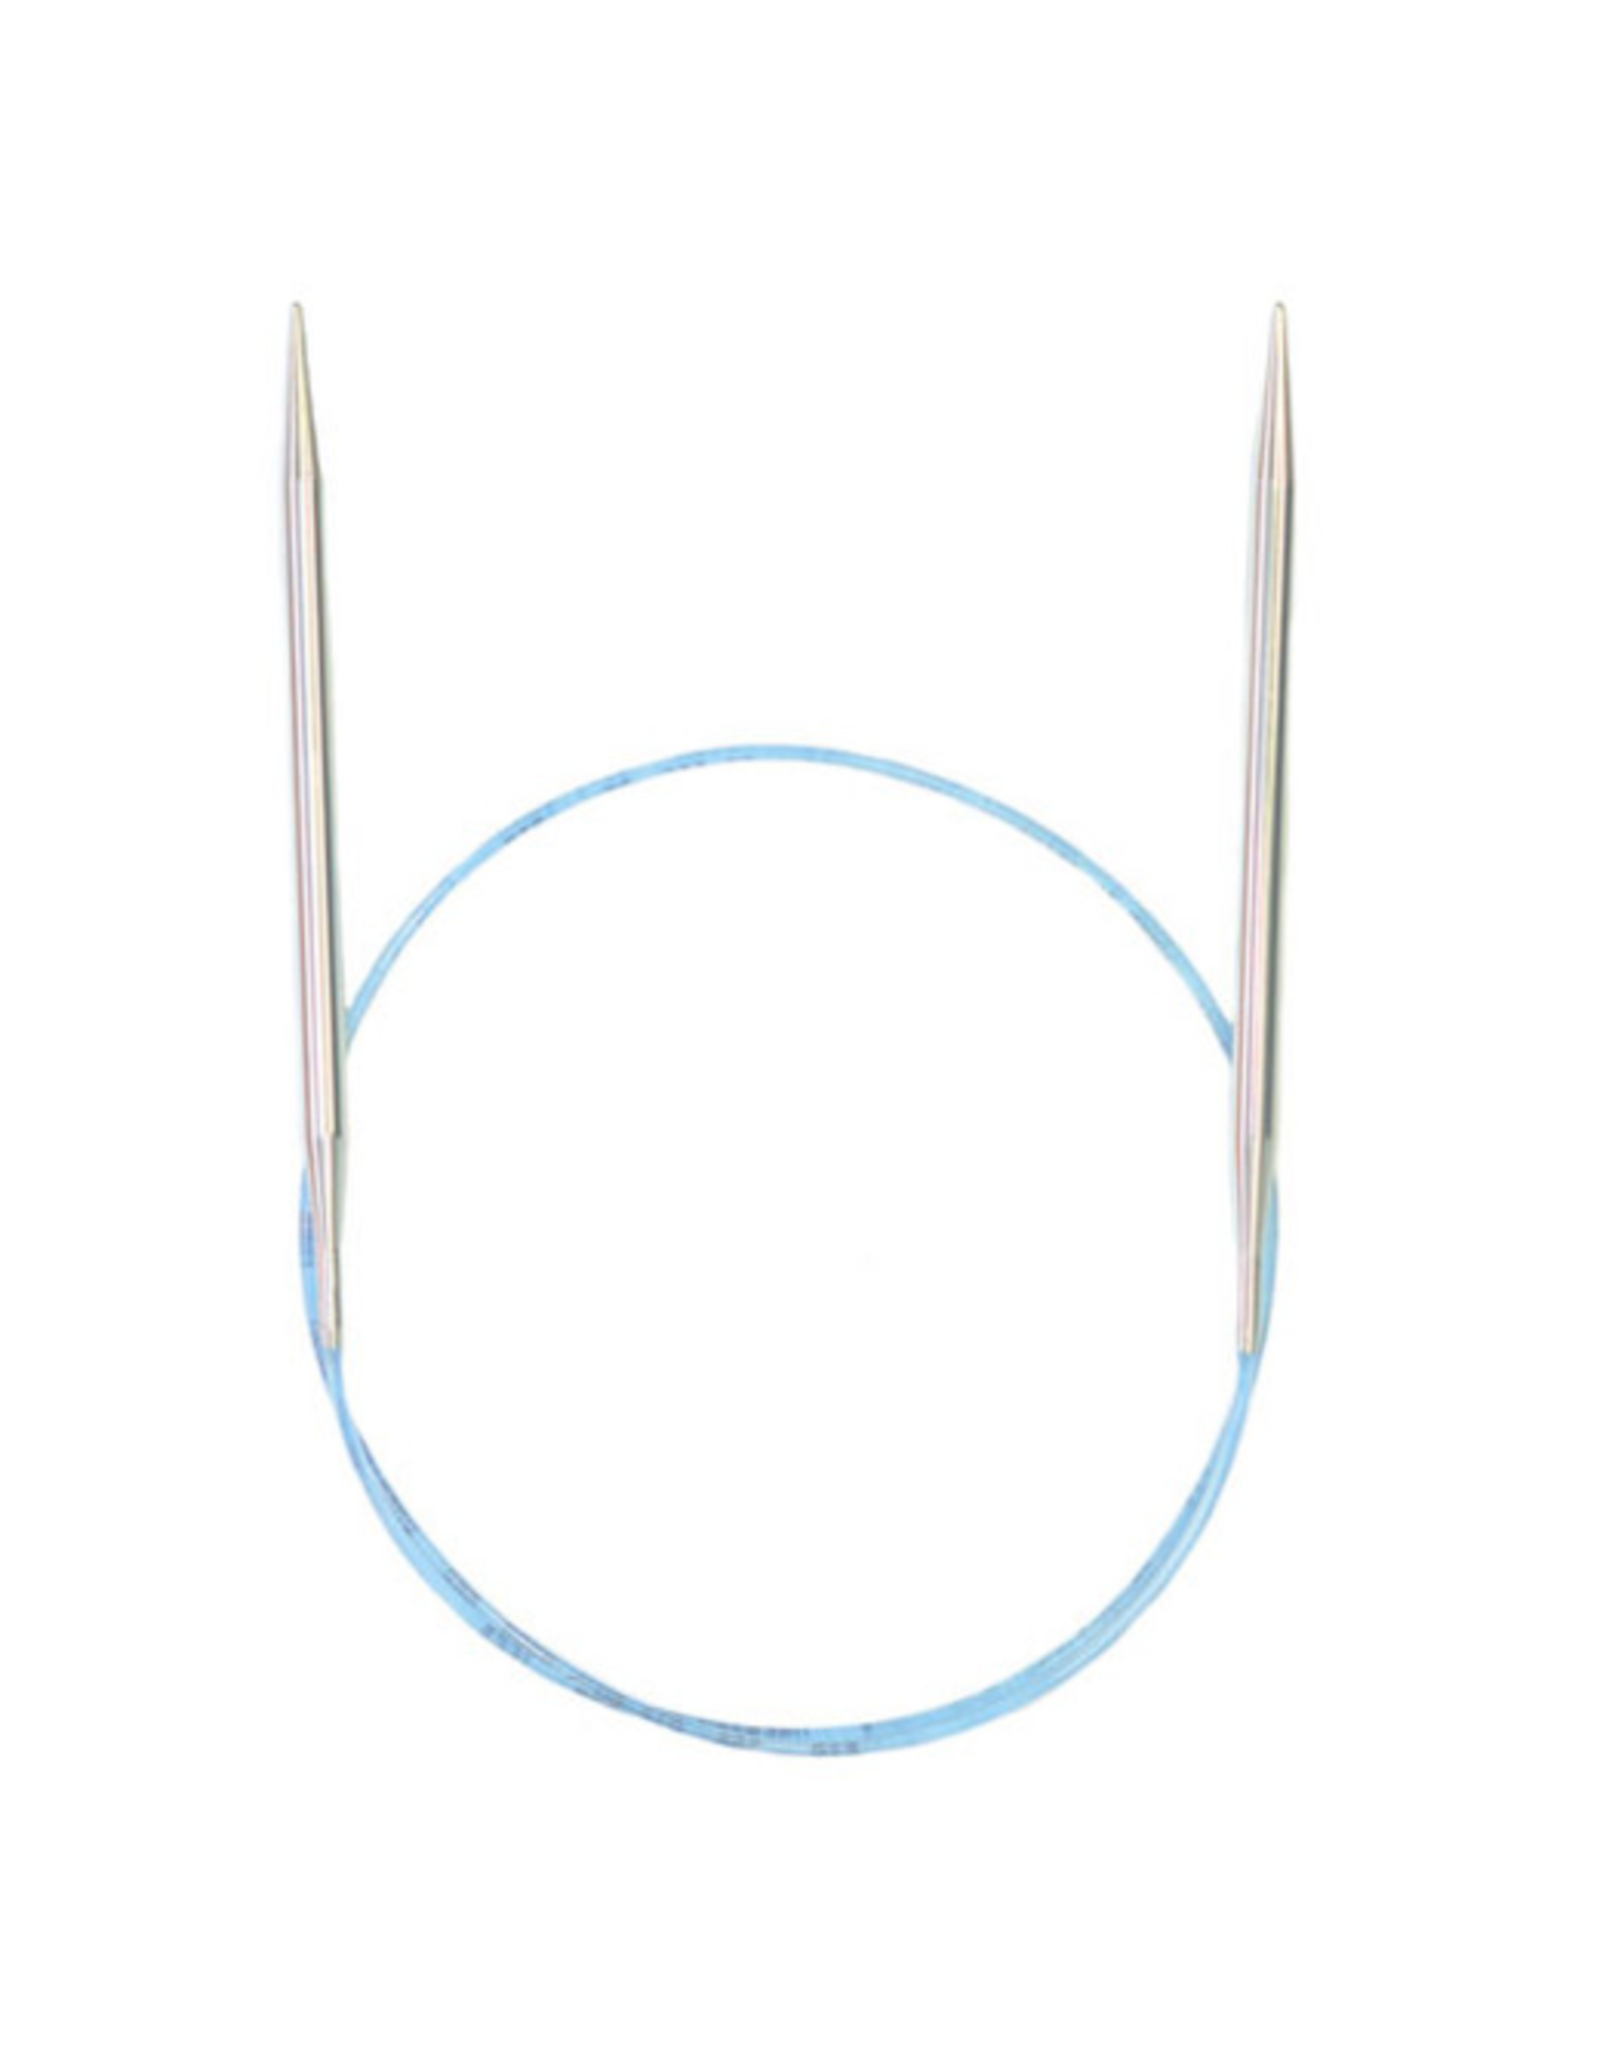 Addi Rockets 16" long circular needle size US 10